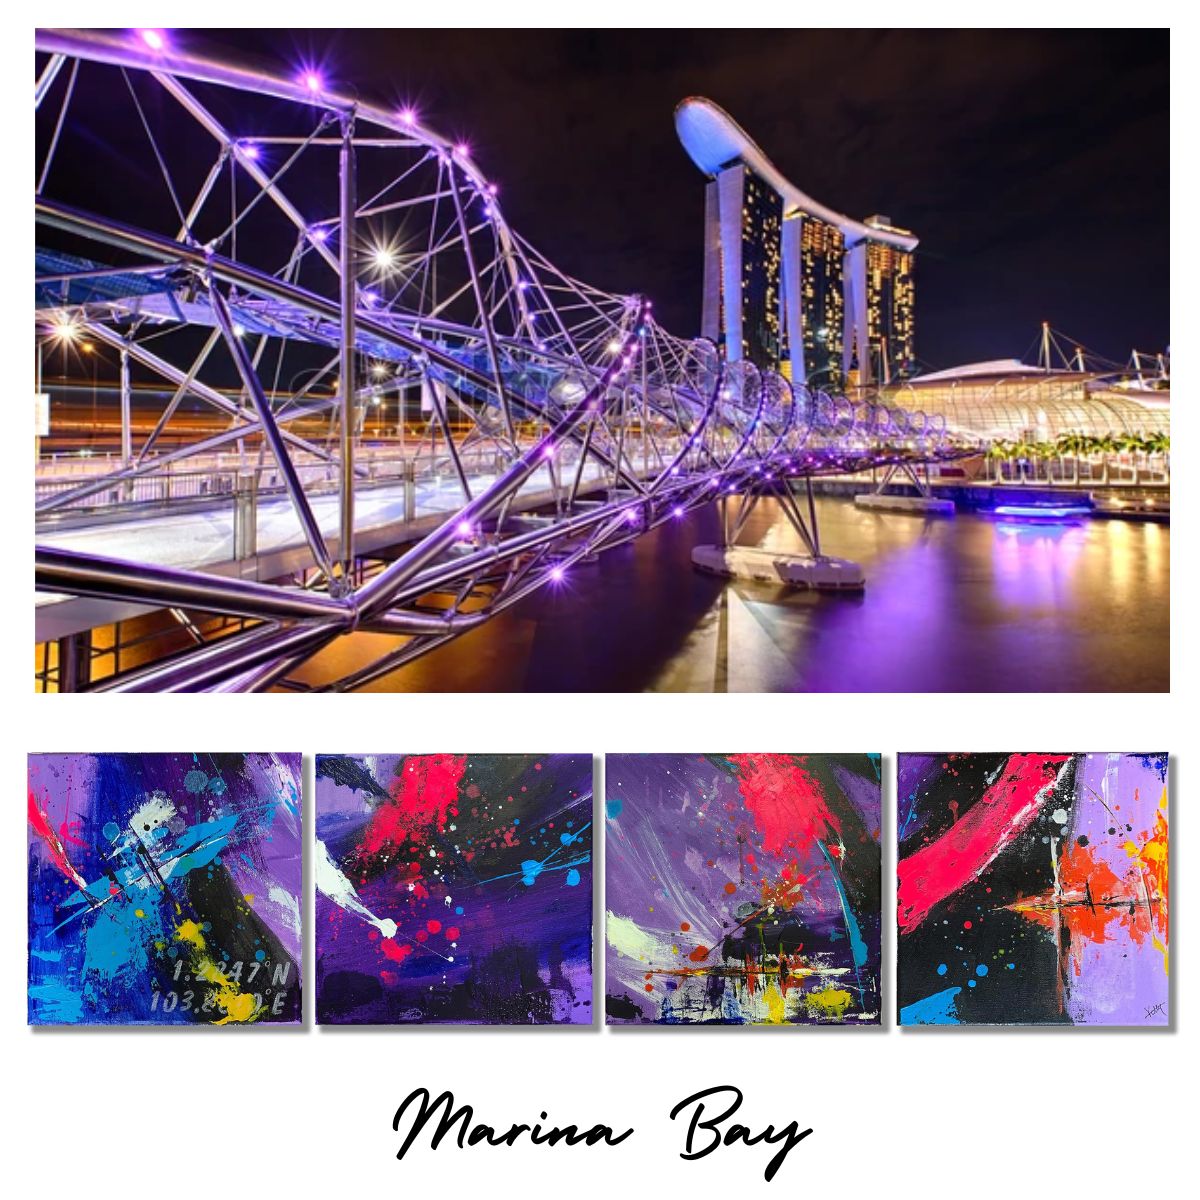 One Degree North: Marina Bay coasters